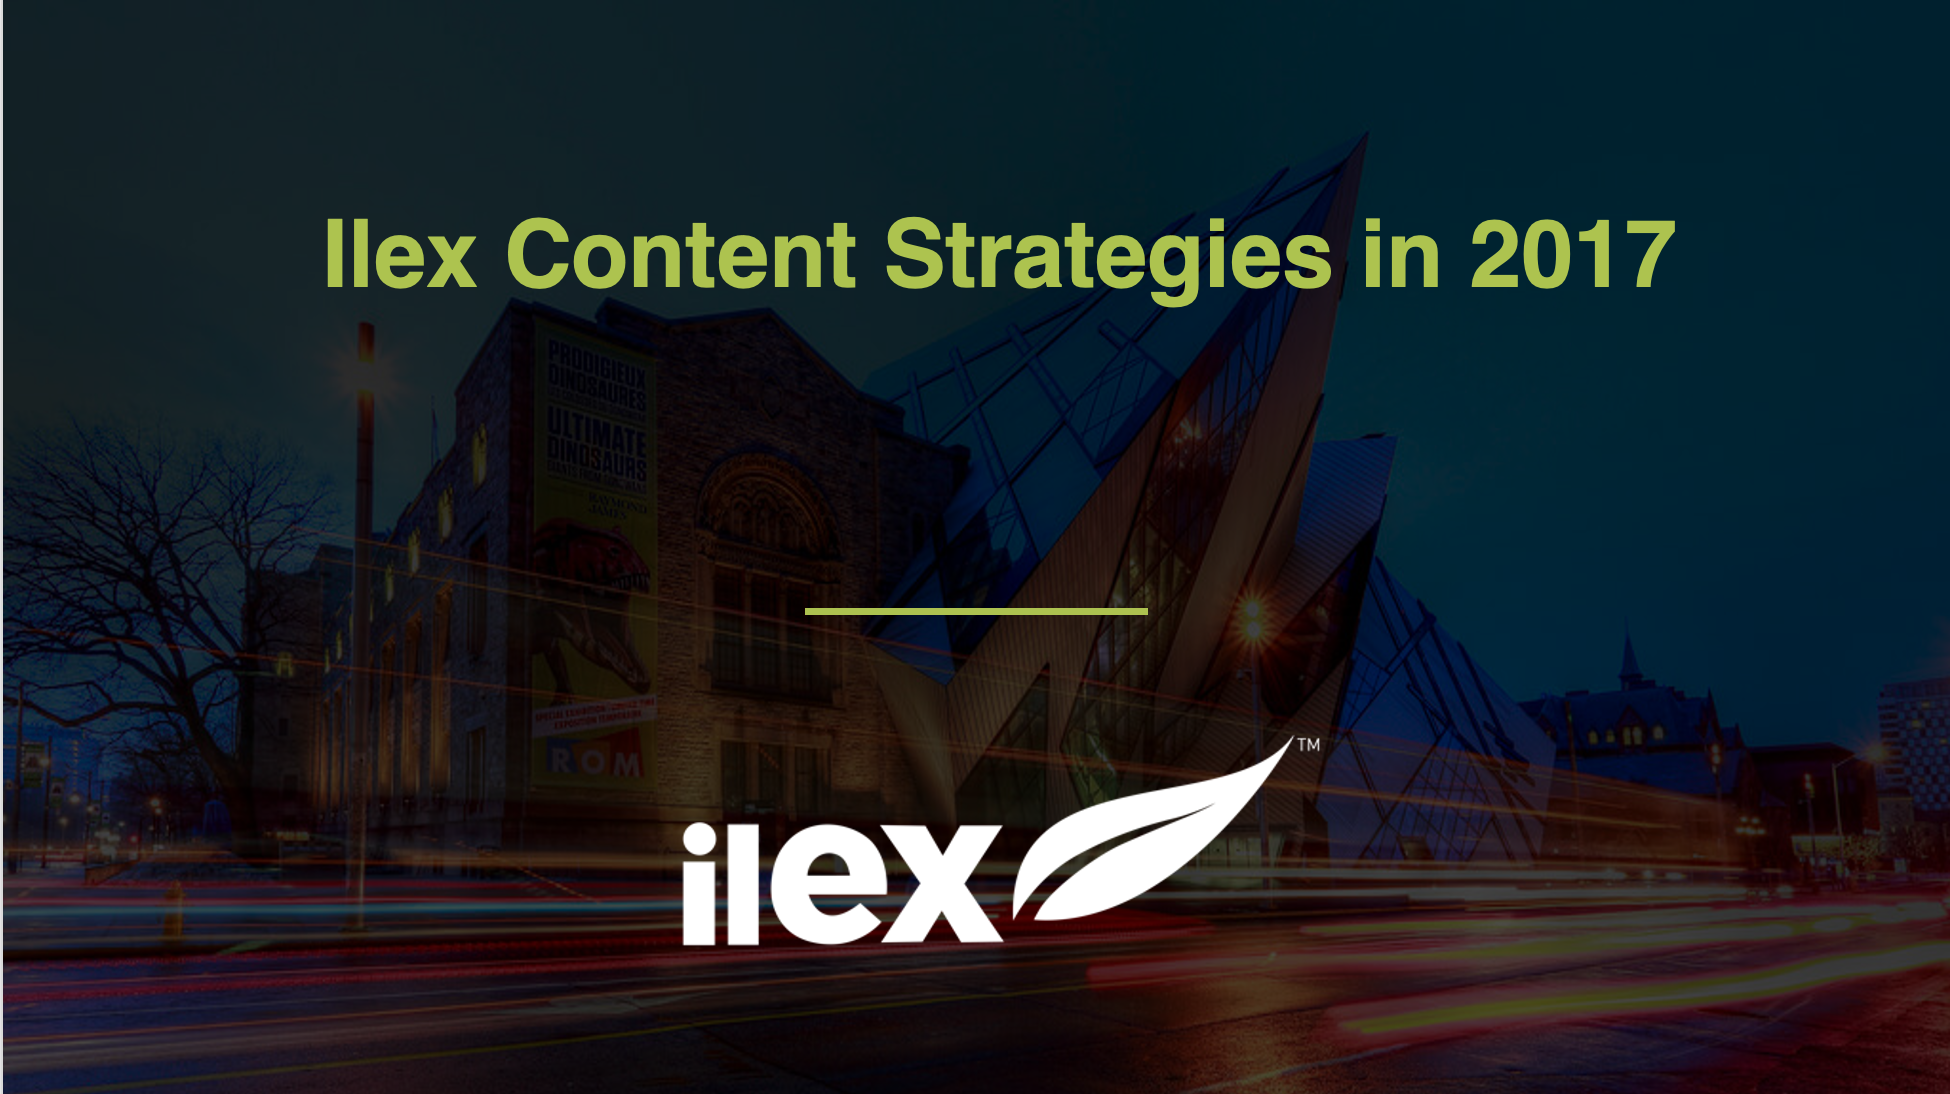 Ilex Content Strategies in 2017